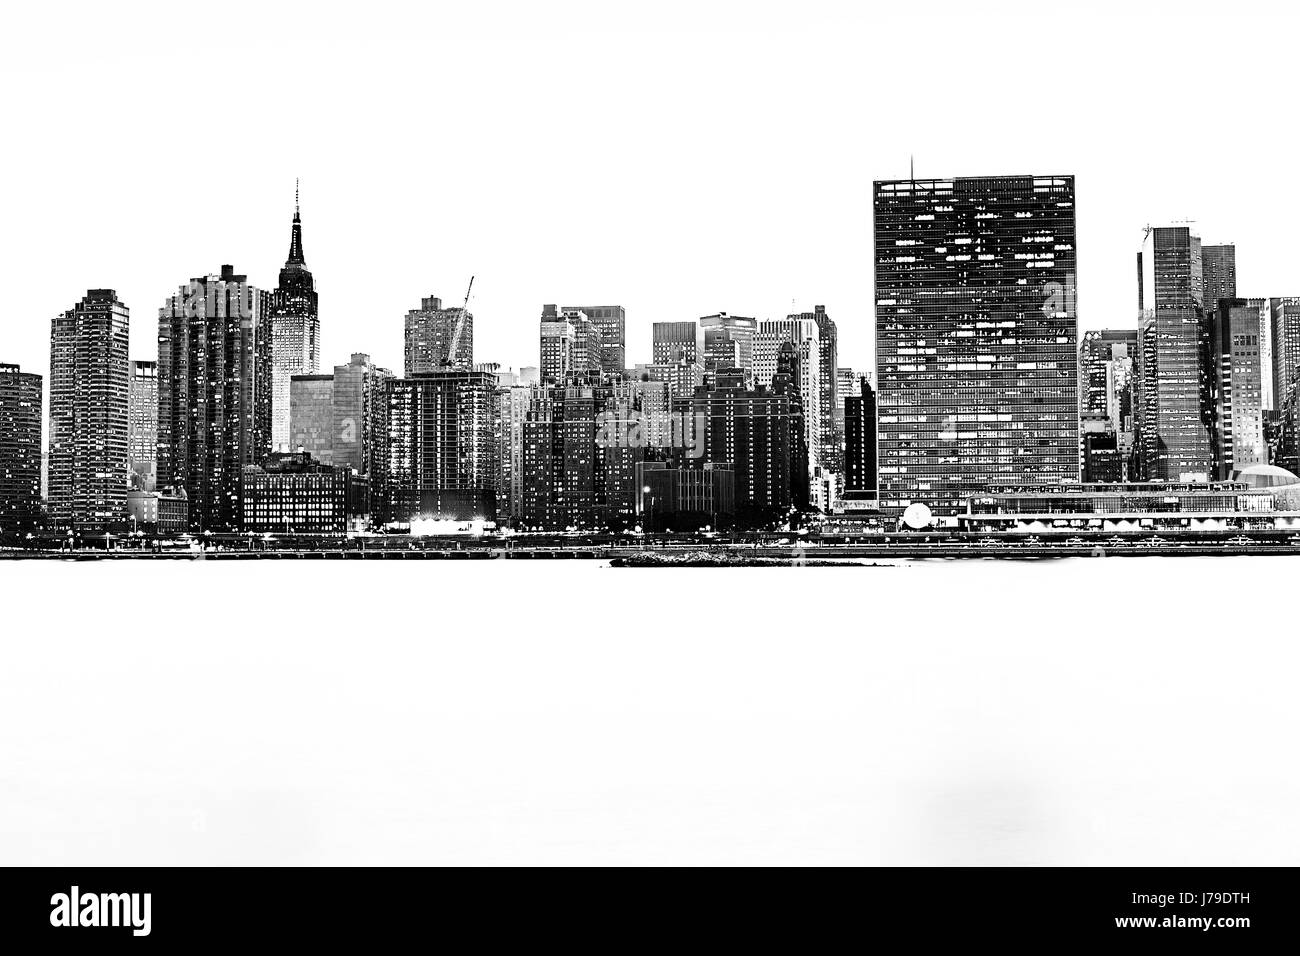 New York City waterfront skyline. Vue de l'Empire state building, bâtiment de l'ONU le noir et blanc Banque D'Images